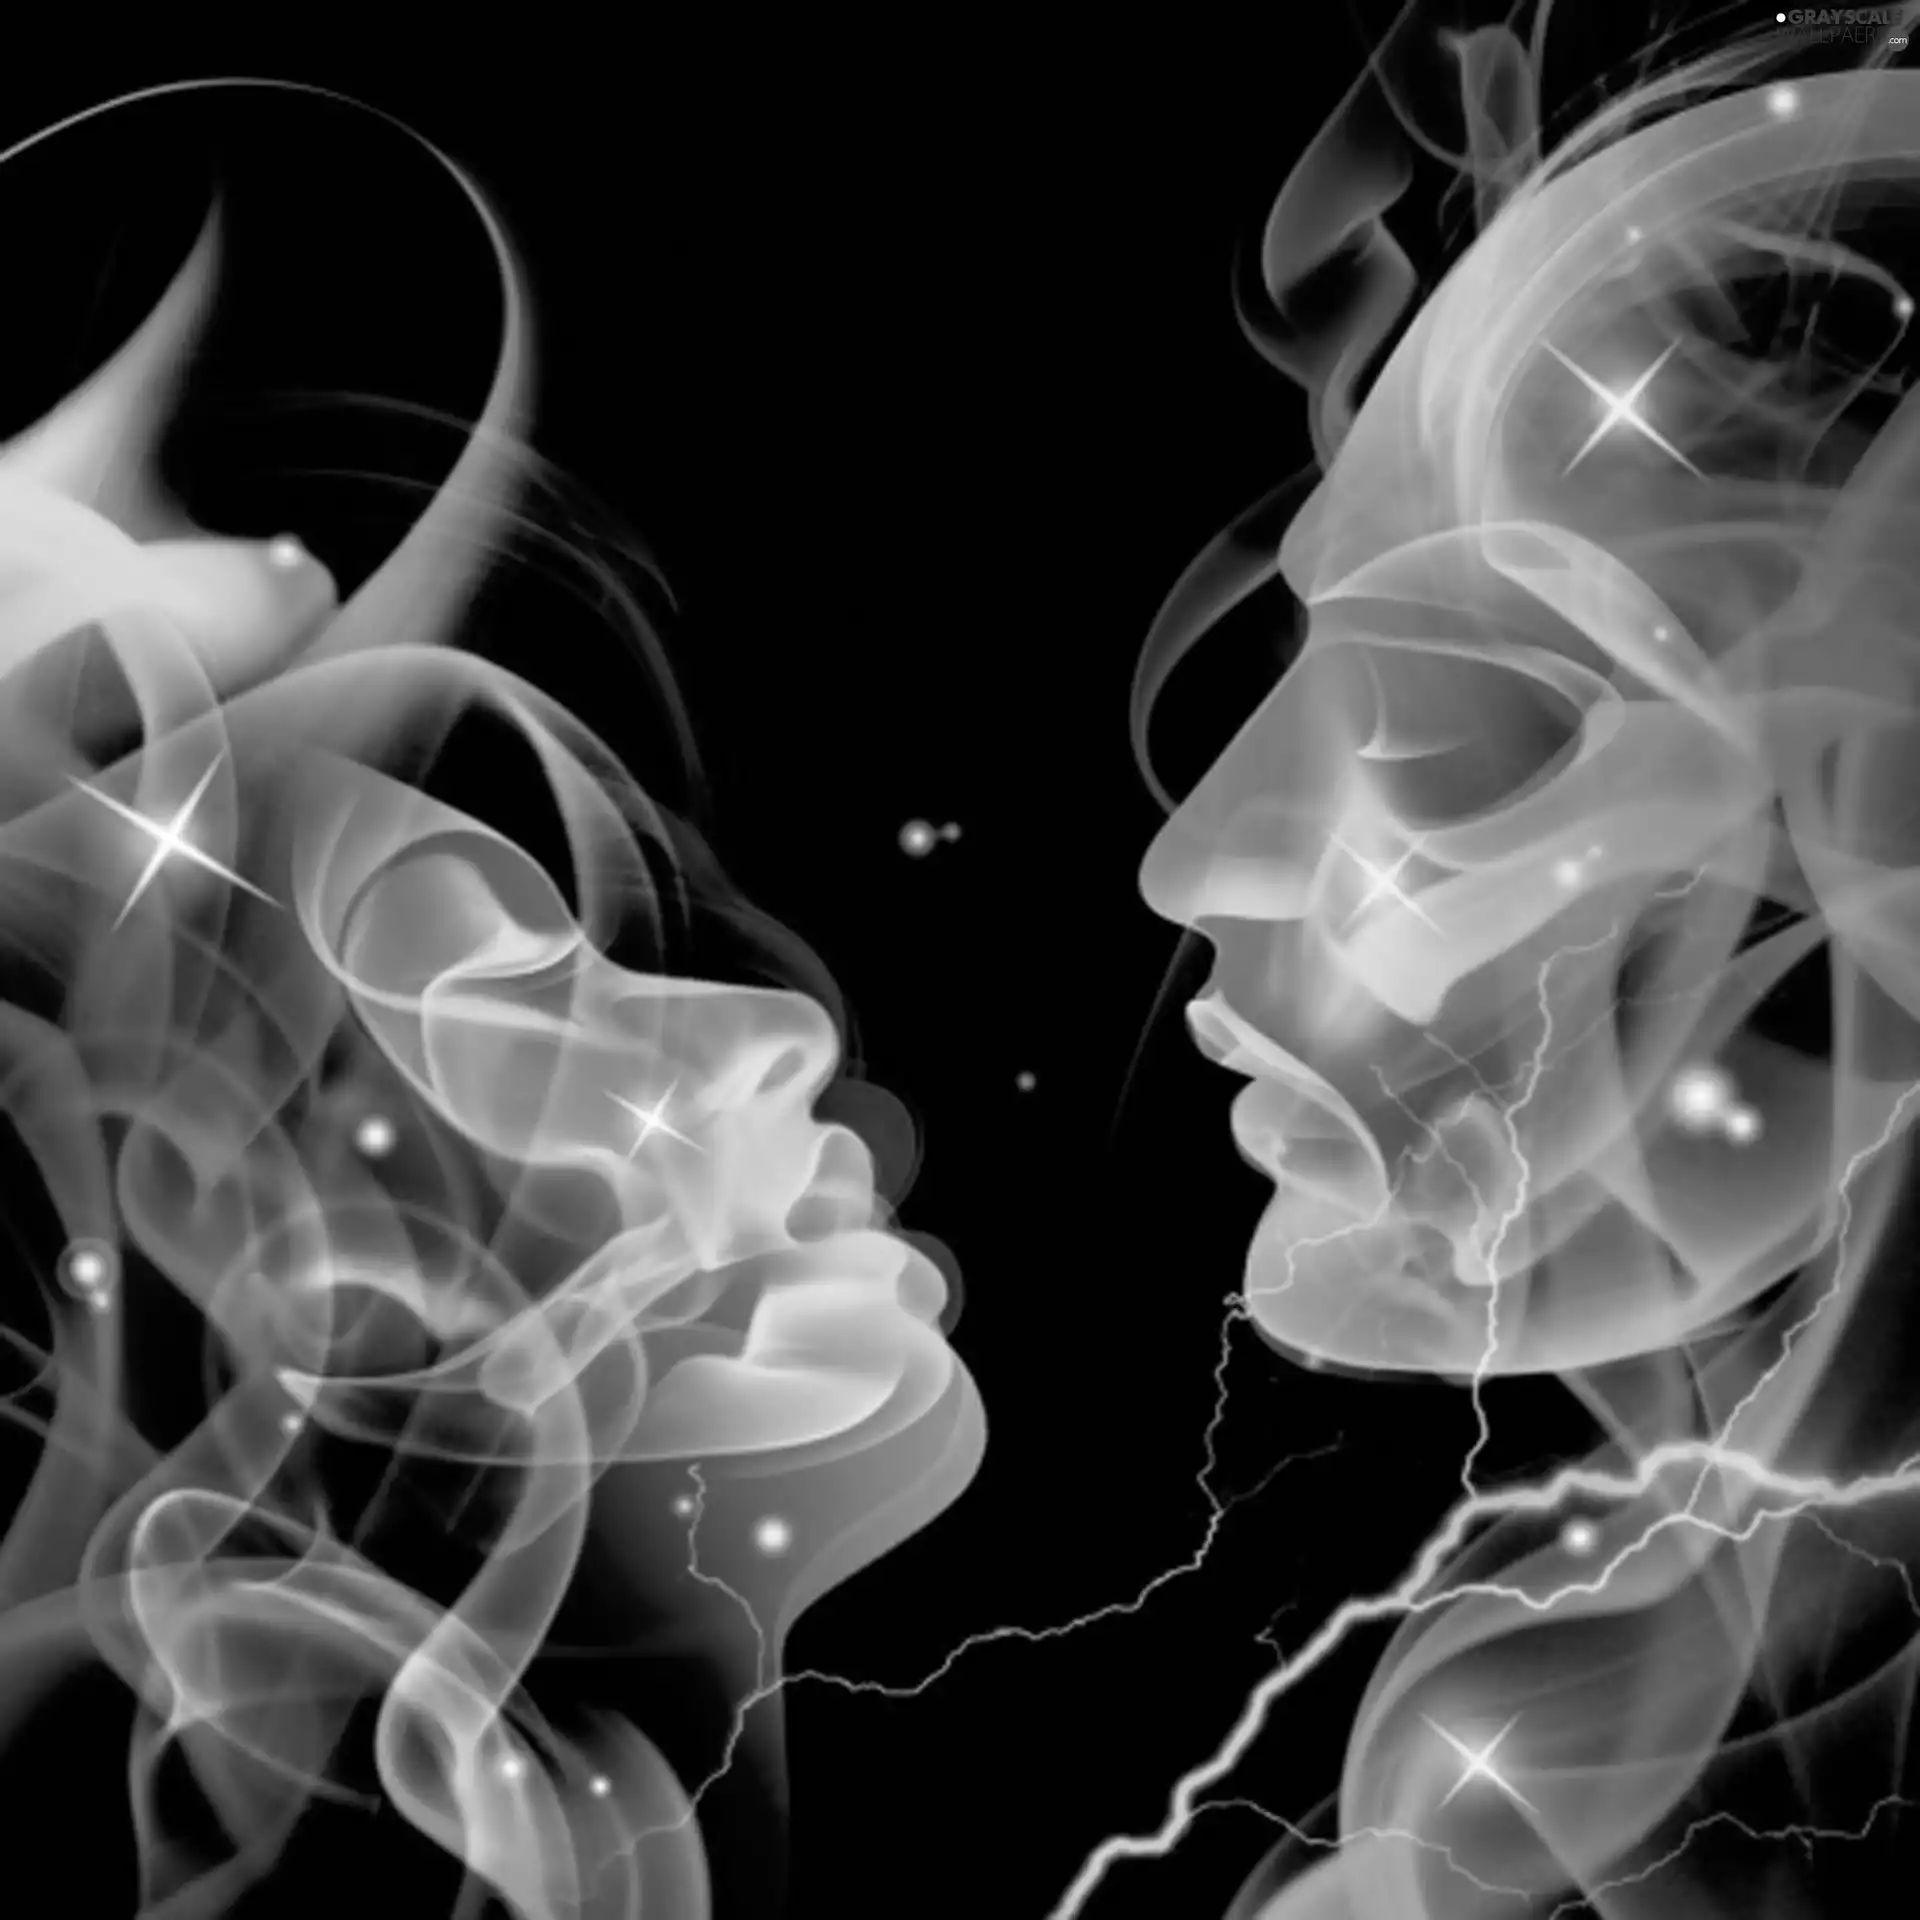 Characters, smoke